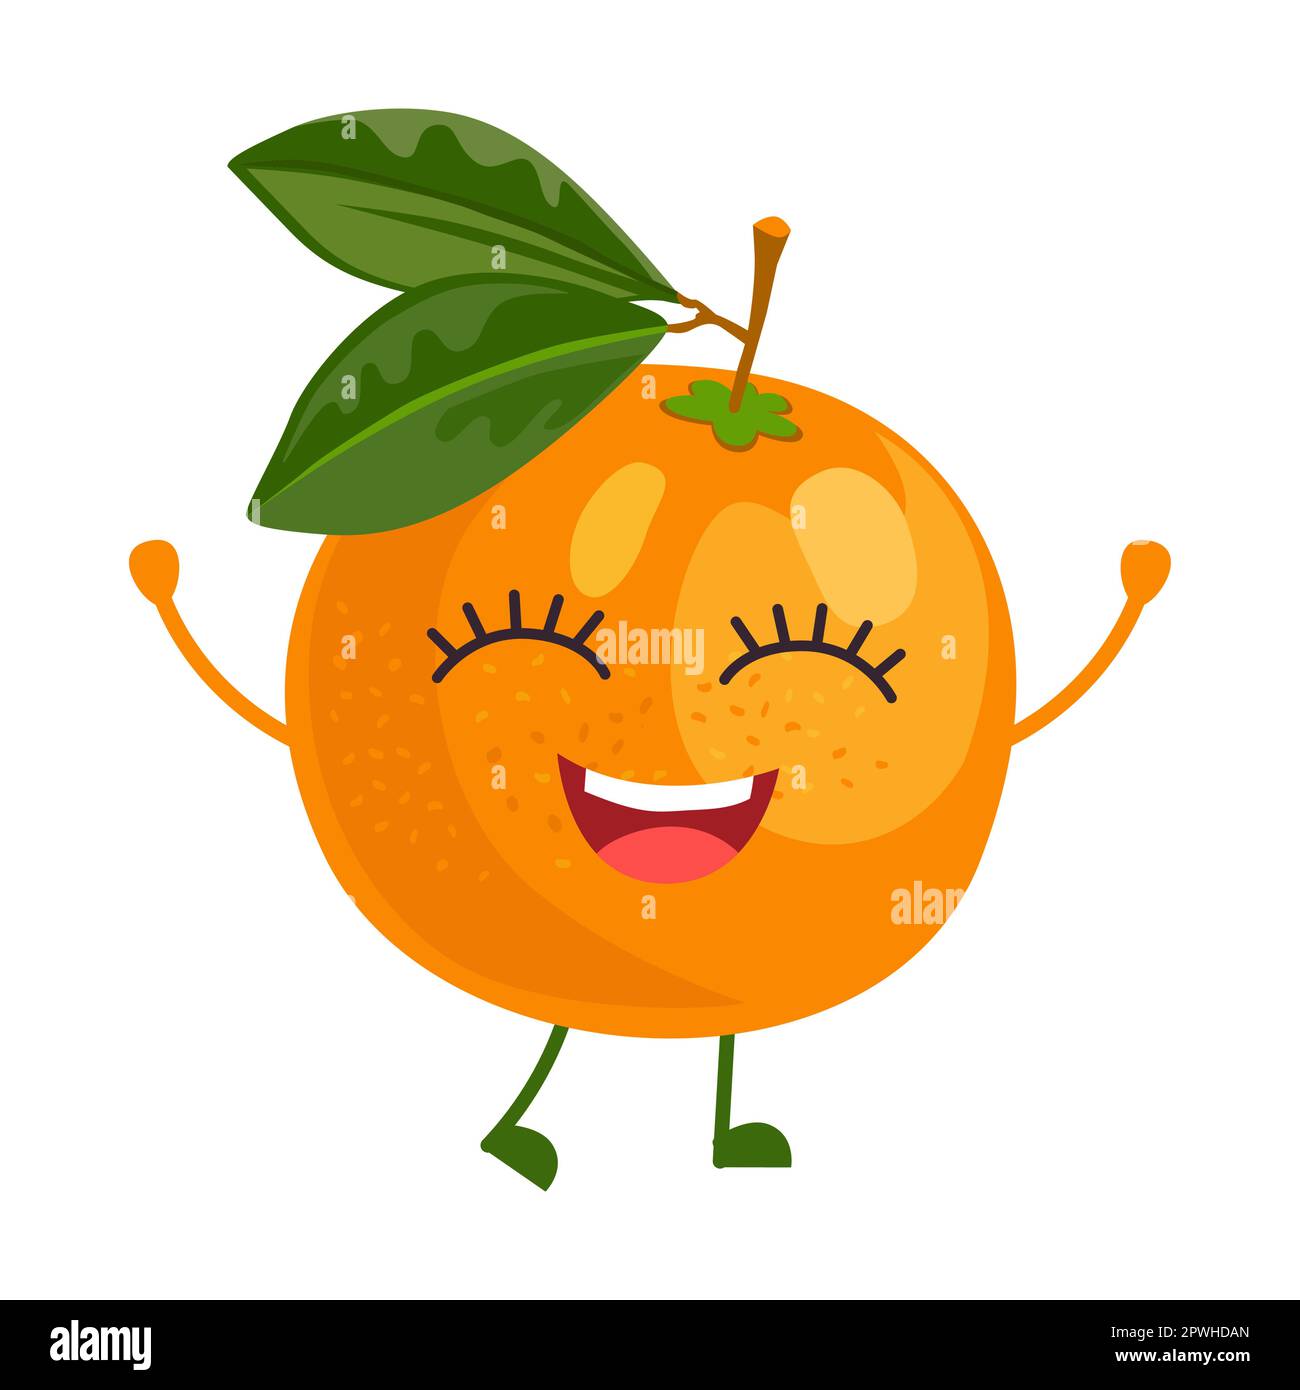 Illustration vectorielle de personnage de dessin animé fruit mandarin mignon. Autocollant comique avec caricature drôle de personnage heureux isolé sur blanc Illustration de Vecteur